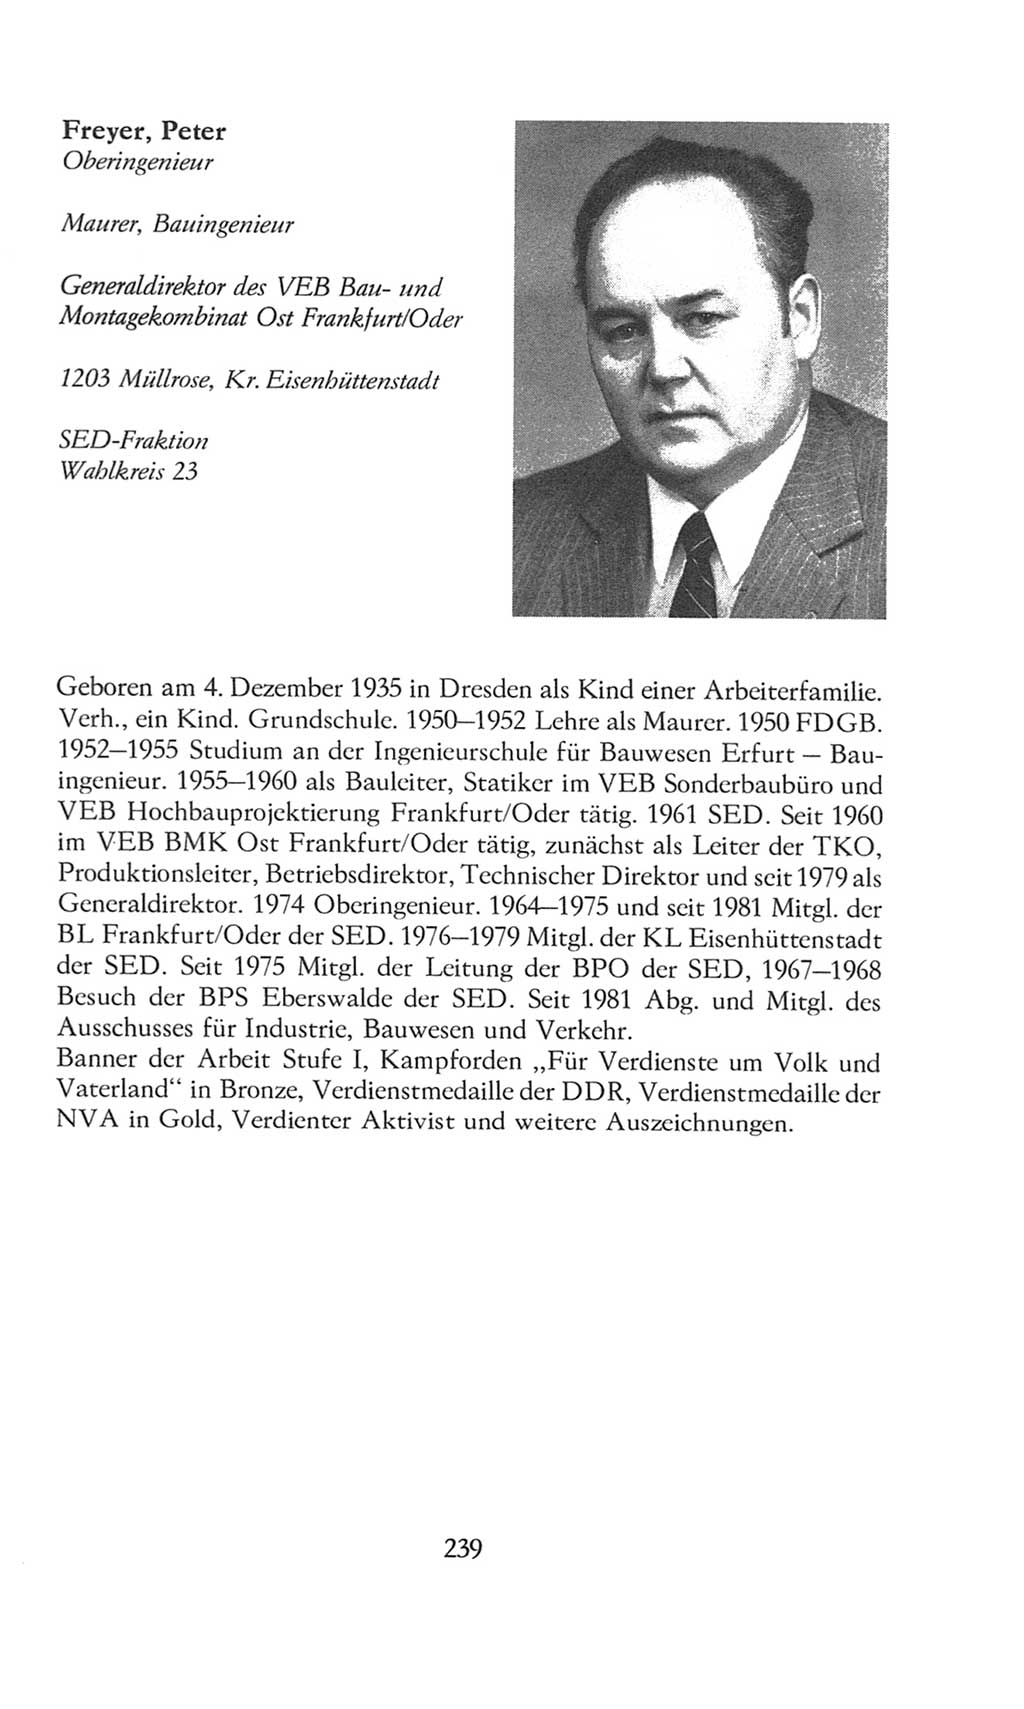 Volkskammer (VK) der Deutschen Demokratischen Republik (DDR), 8. Wahlperiode 1981-1986, Seite 239 (VK. DDR 8. WP. 1981-1986, S. 239)